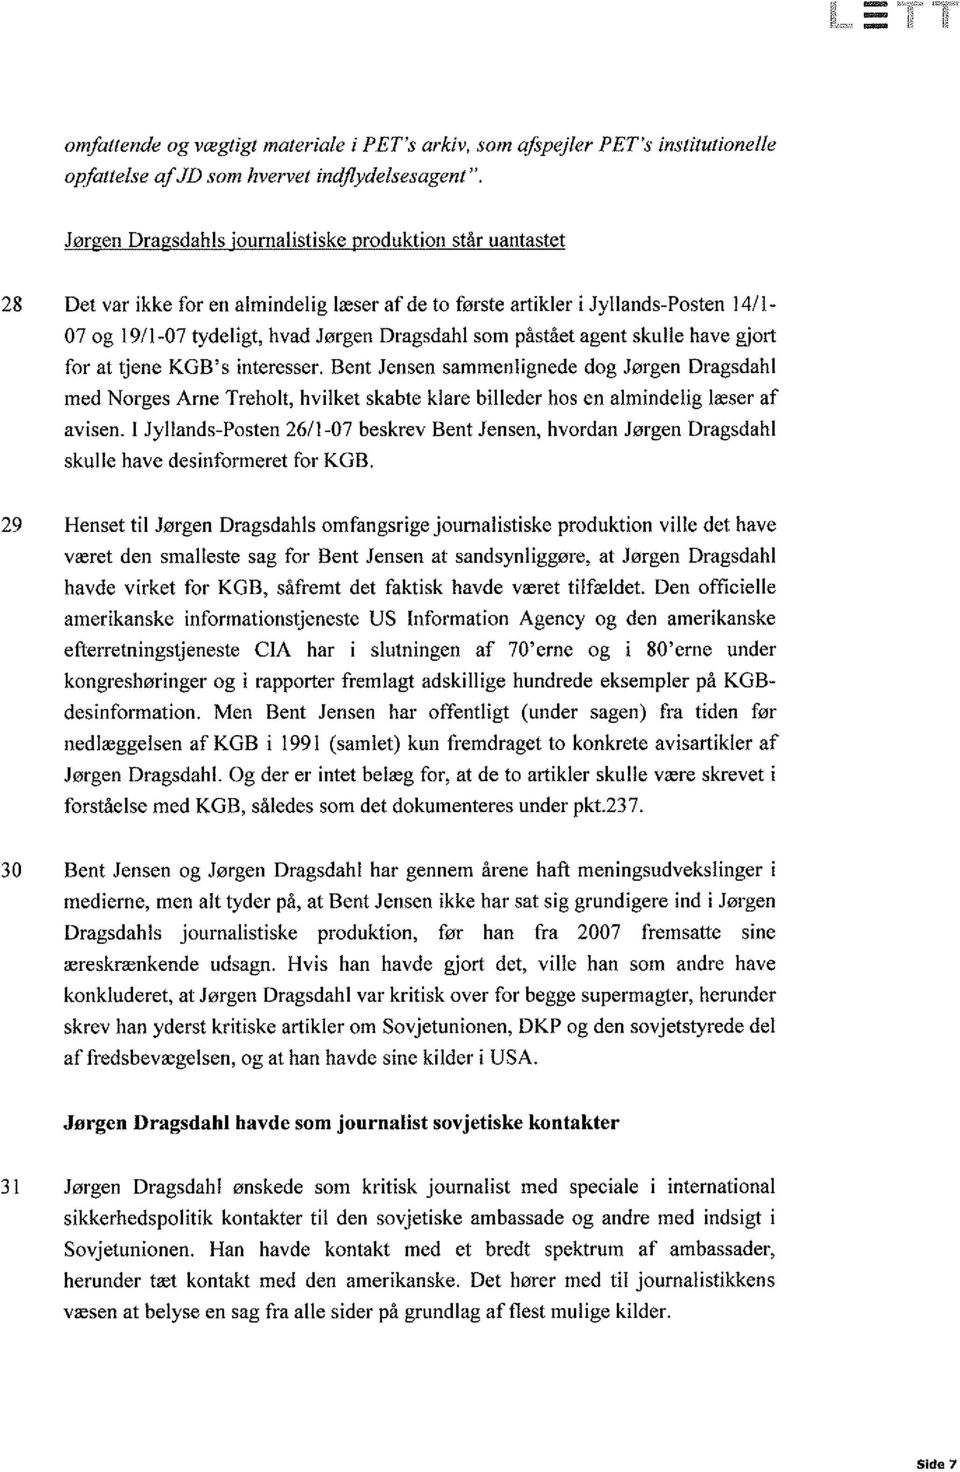 påstået agent skulle have giort for at tjene KGB's interesser. Bent Jensen sammenlignede dog Jørgen Dragsdahl med Norges Arne Treholt, hvilket skabte klare billeder hos en almindelig læser af avisen.